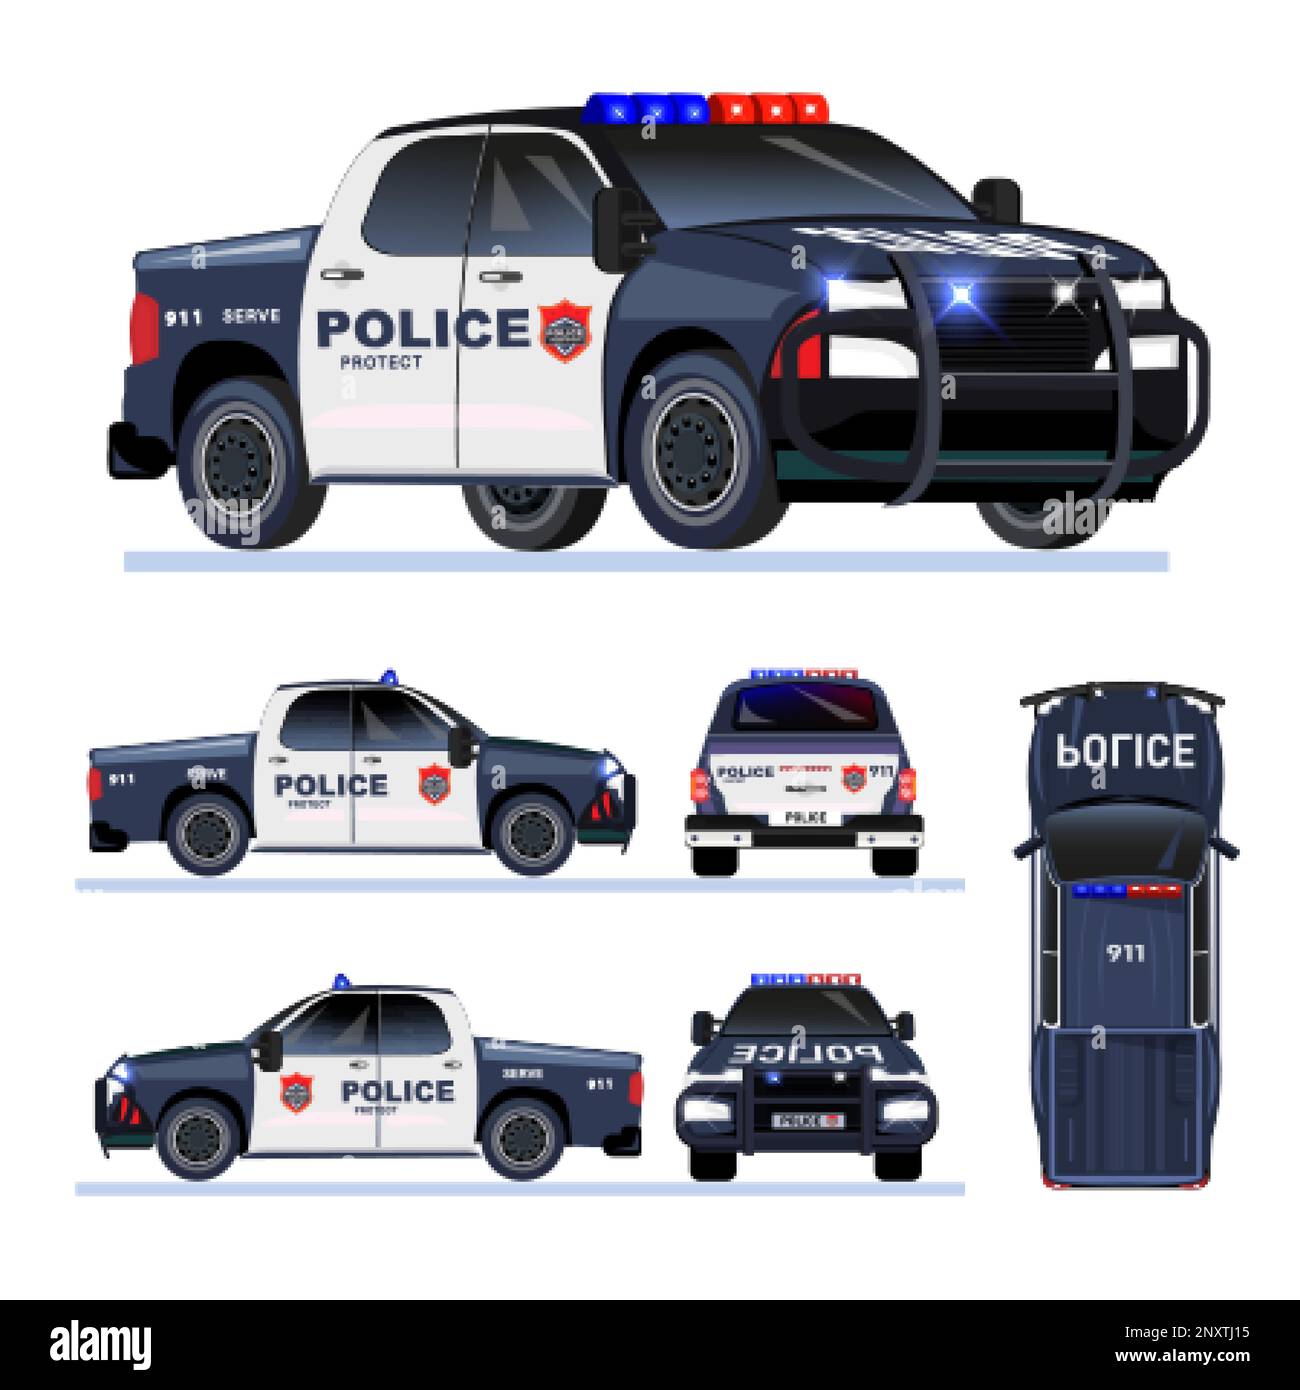 Polizeiauto aus verschiedenen Blickwinkeln, obere Seite, Rückansicht, Vorderansicht, flache Darstellung isolierter Vektoren Stock Vektor